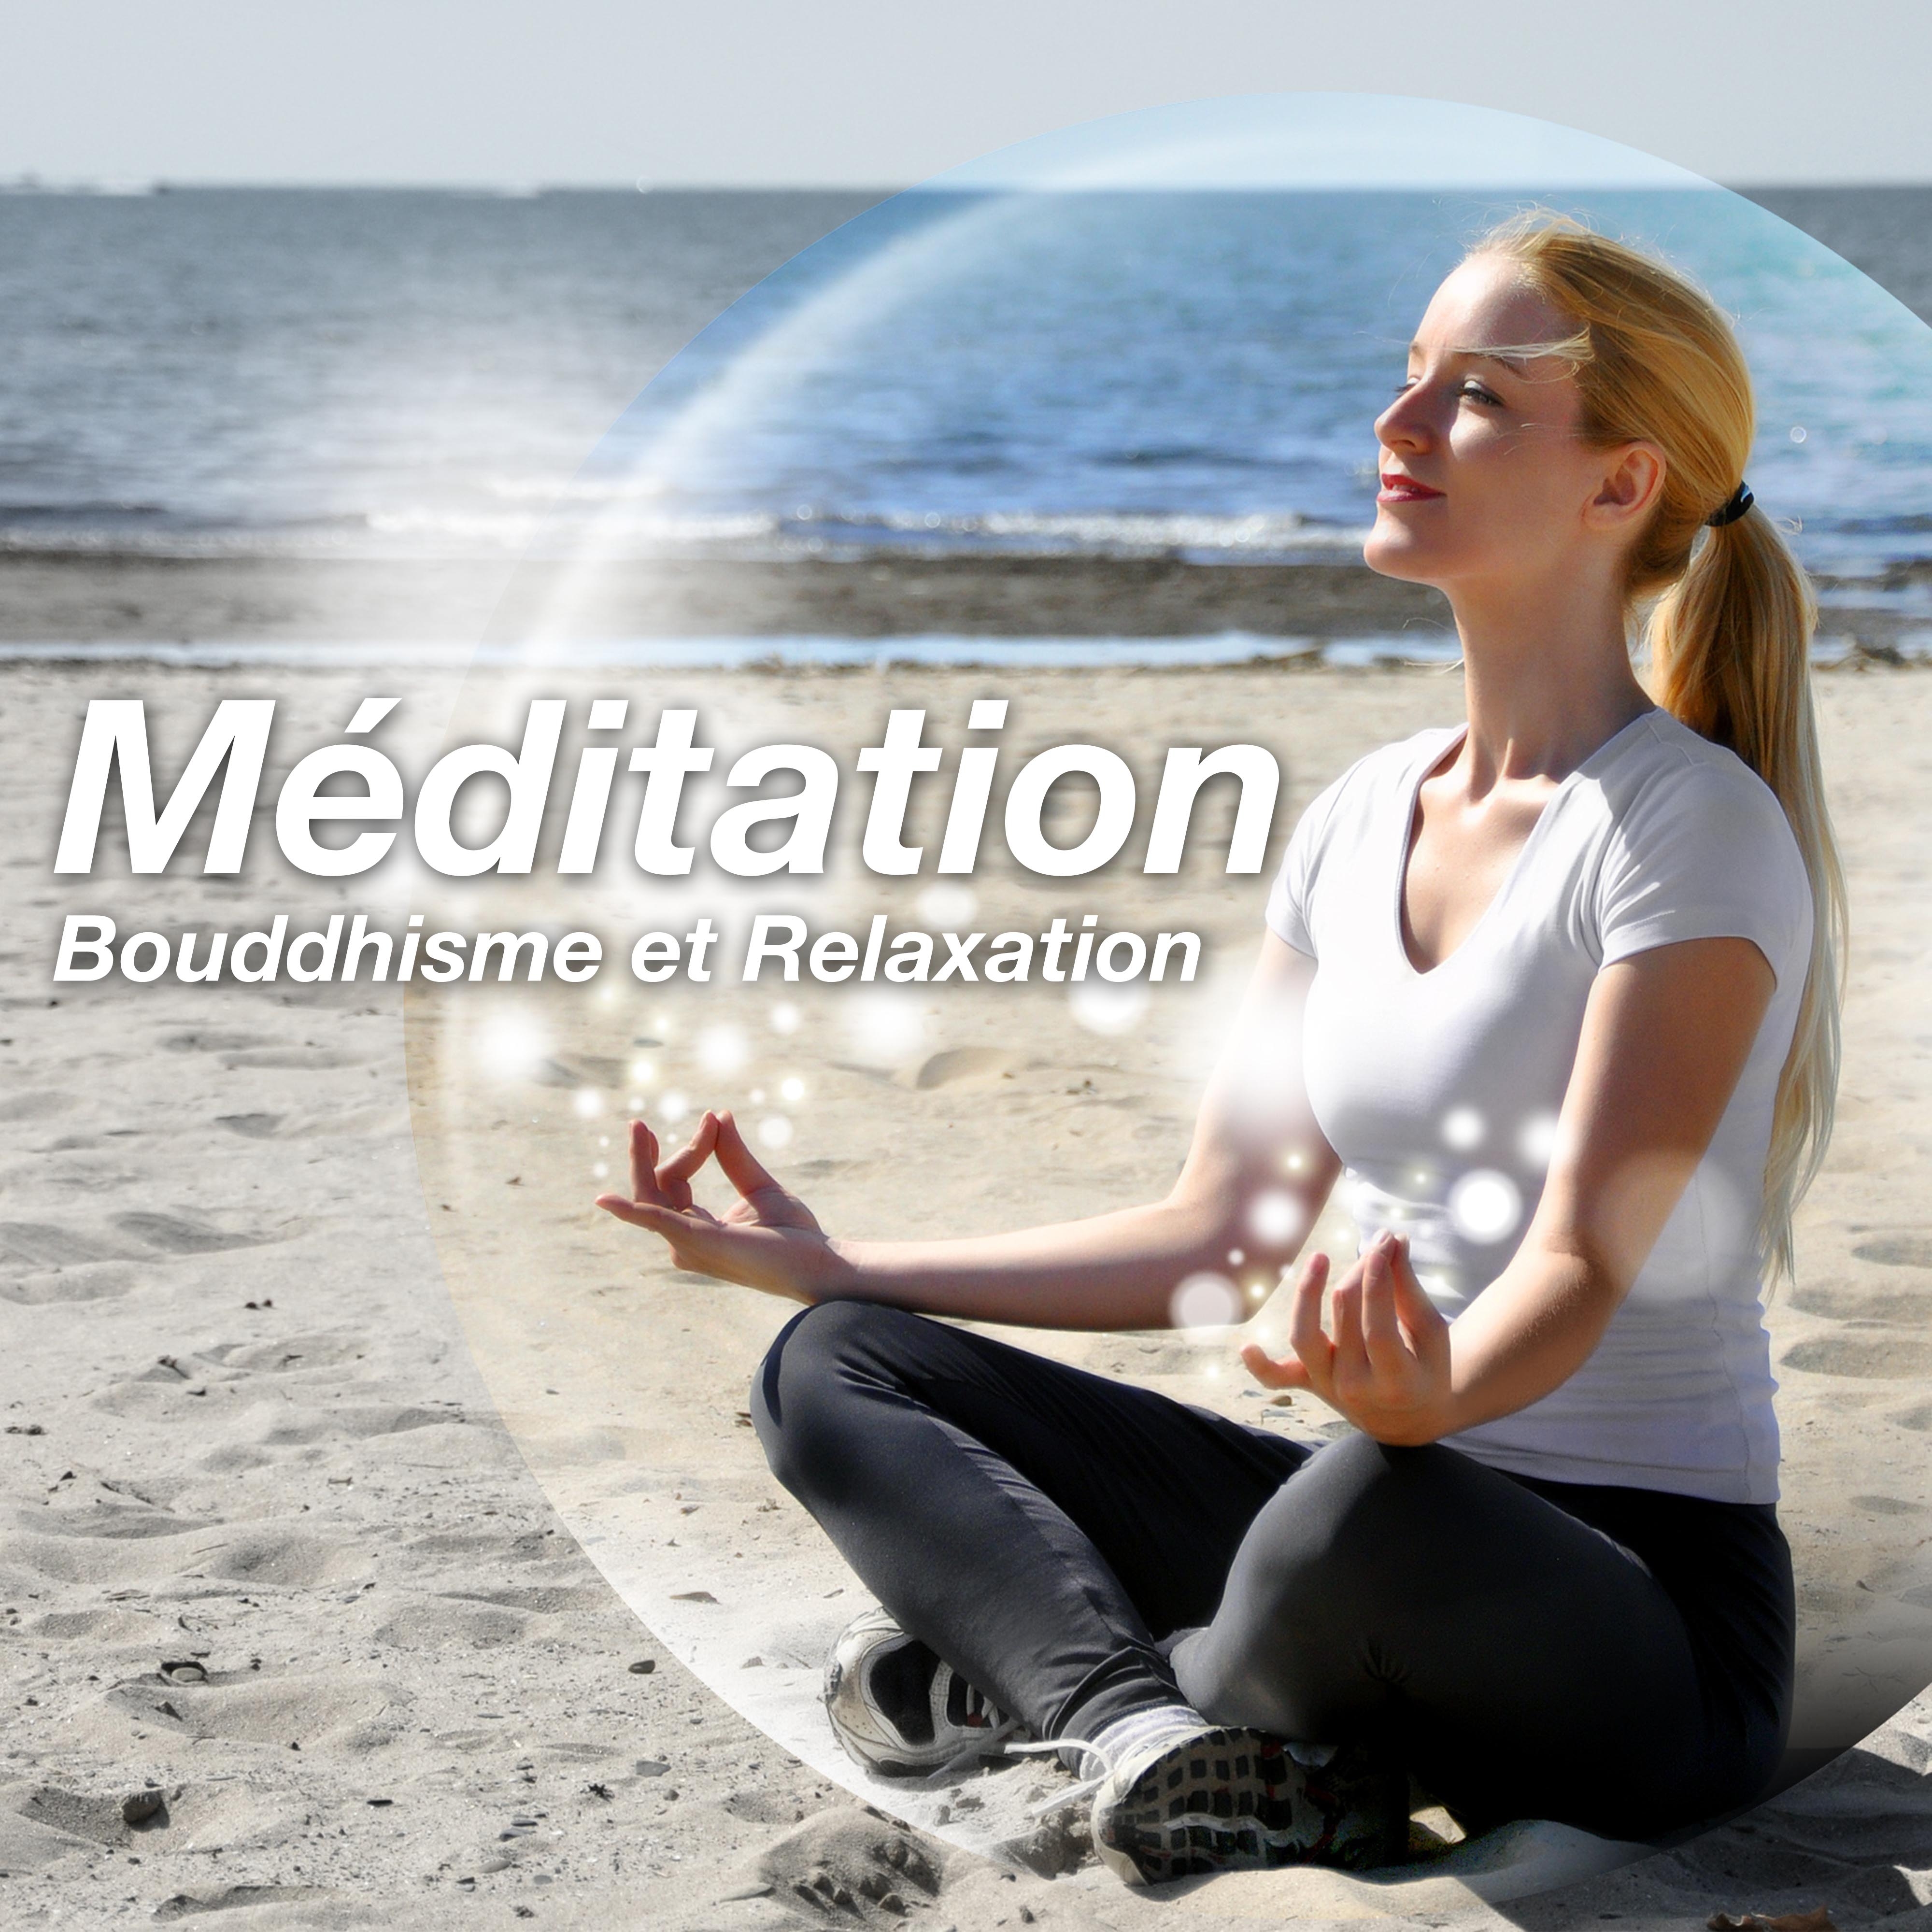 Me ditation: Musique pour Bouddhisme et Relaxation pour Me ditation Pleine Conscience